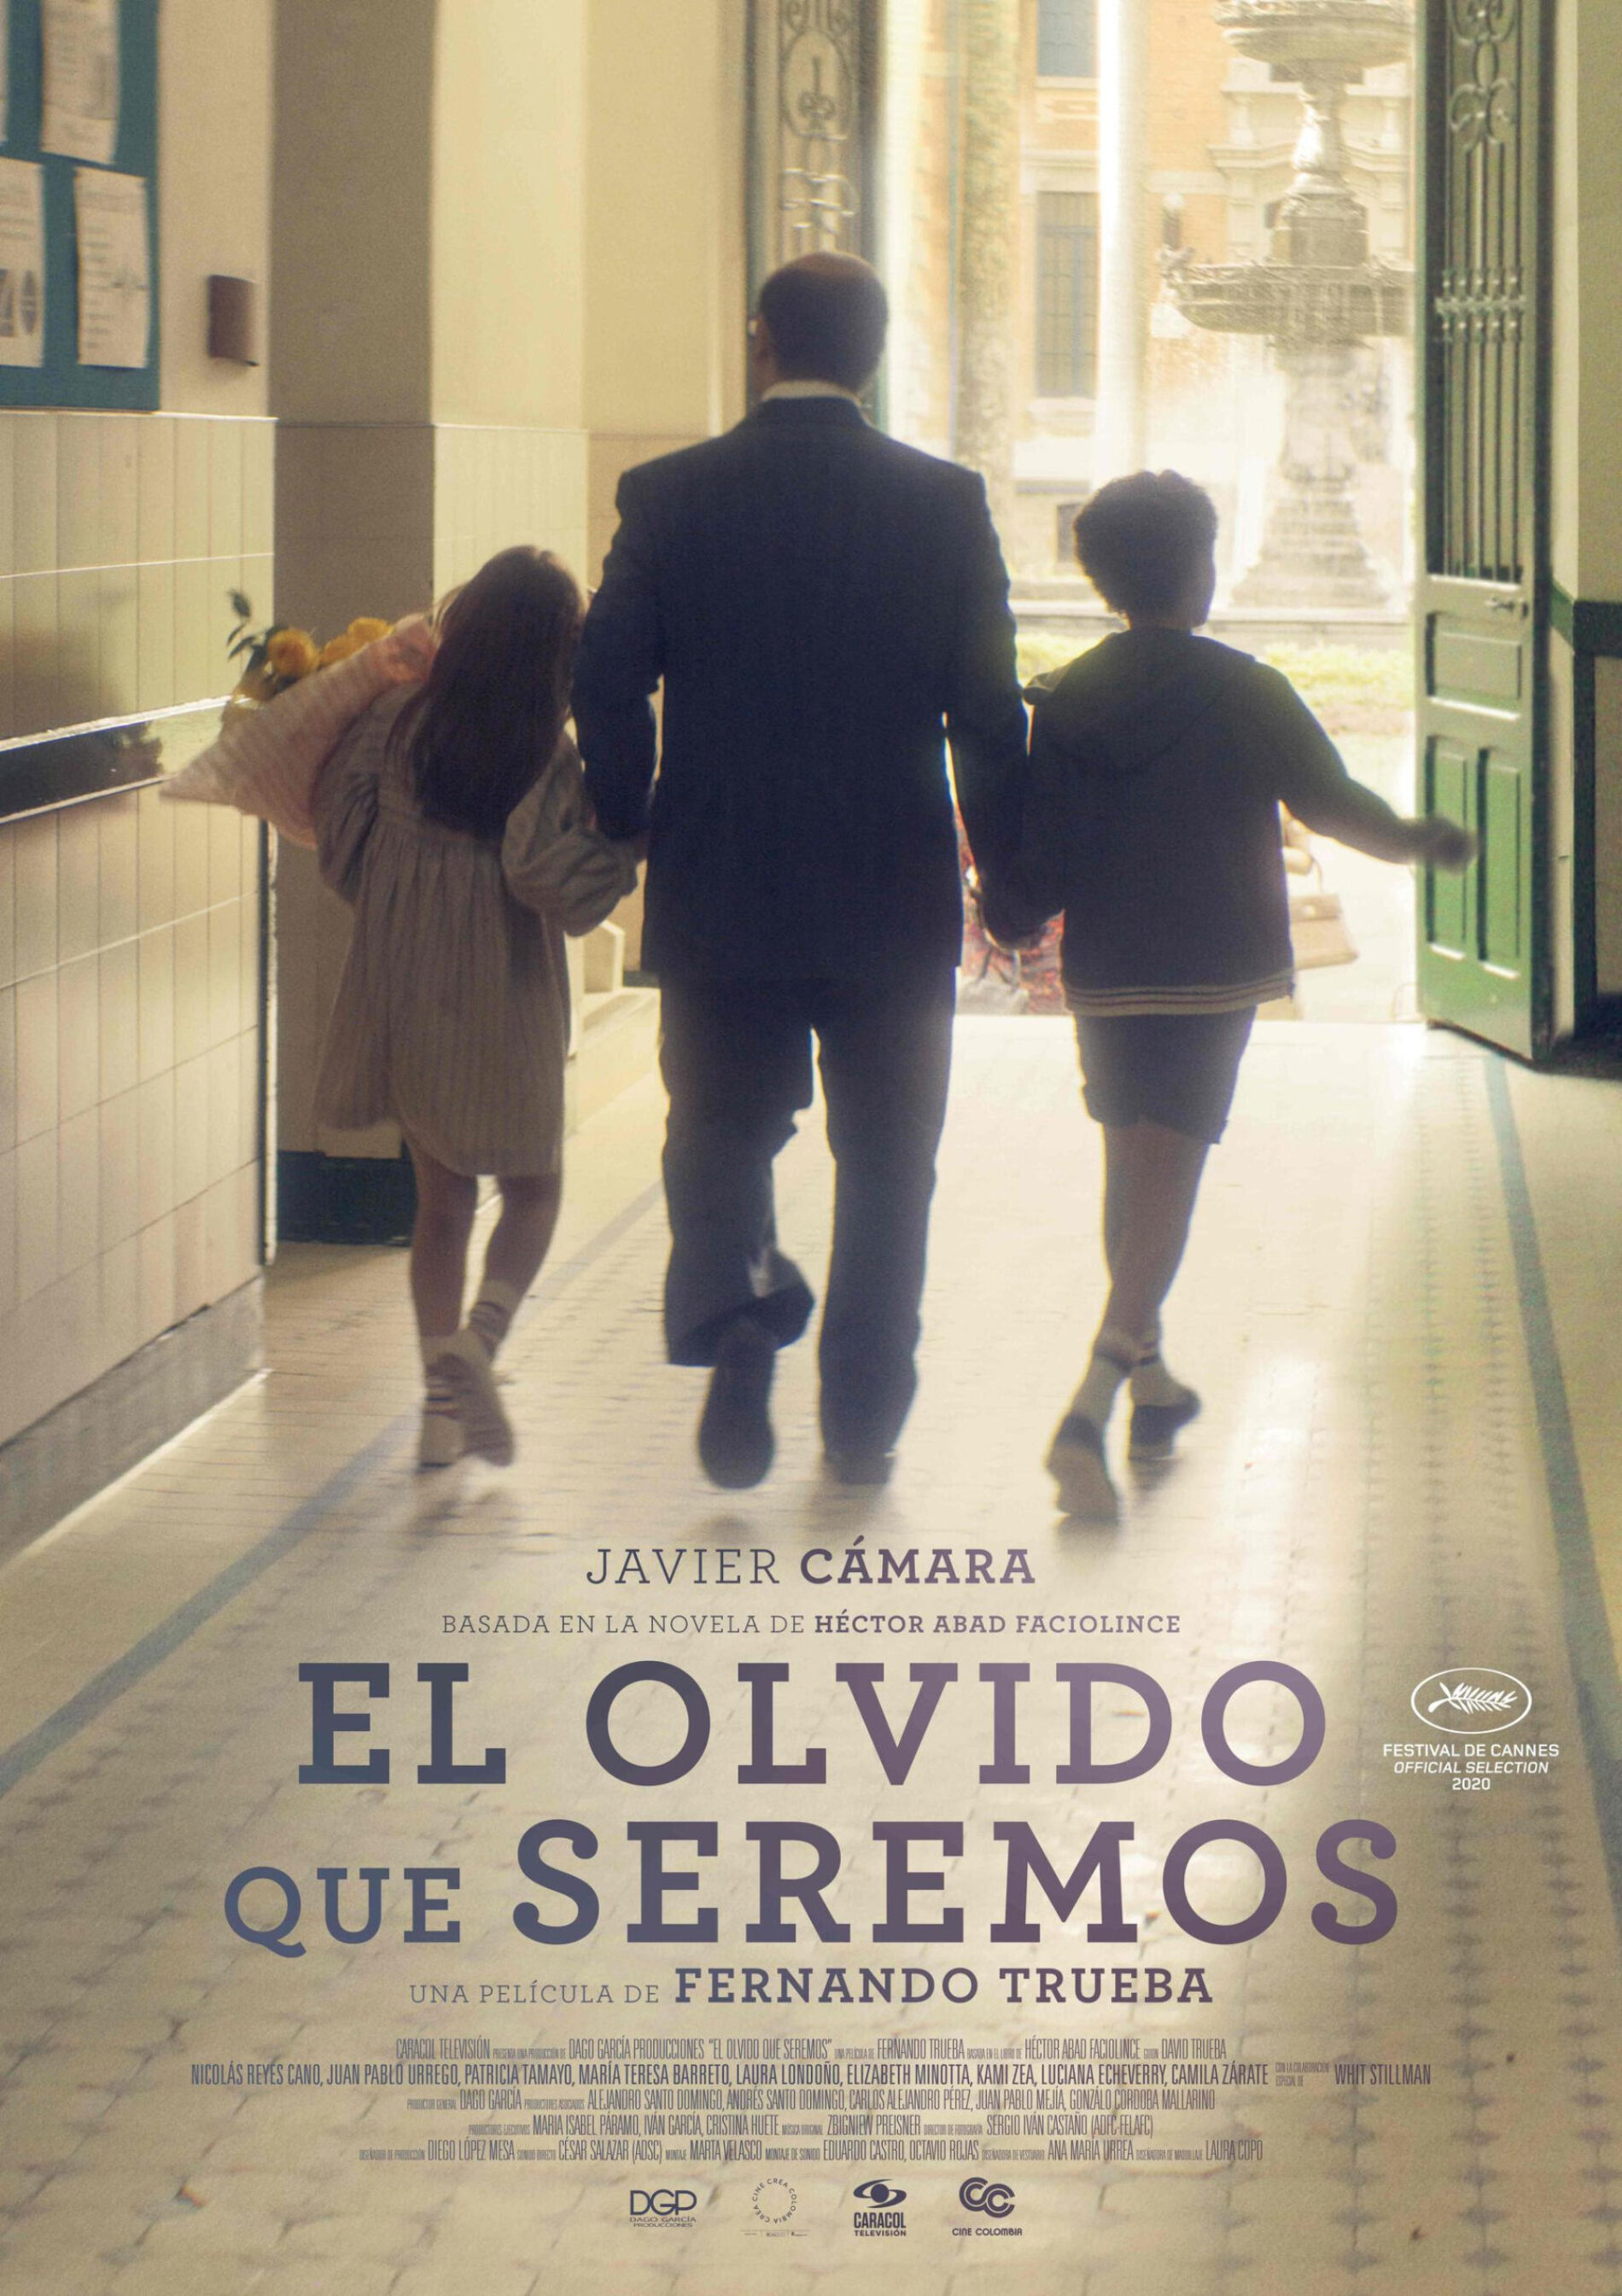 El olvido que seremos, Mejor Película Iberoamericana en los Premios Goya 2021